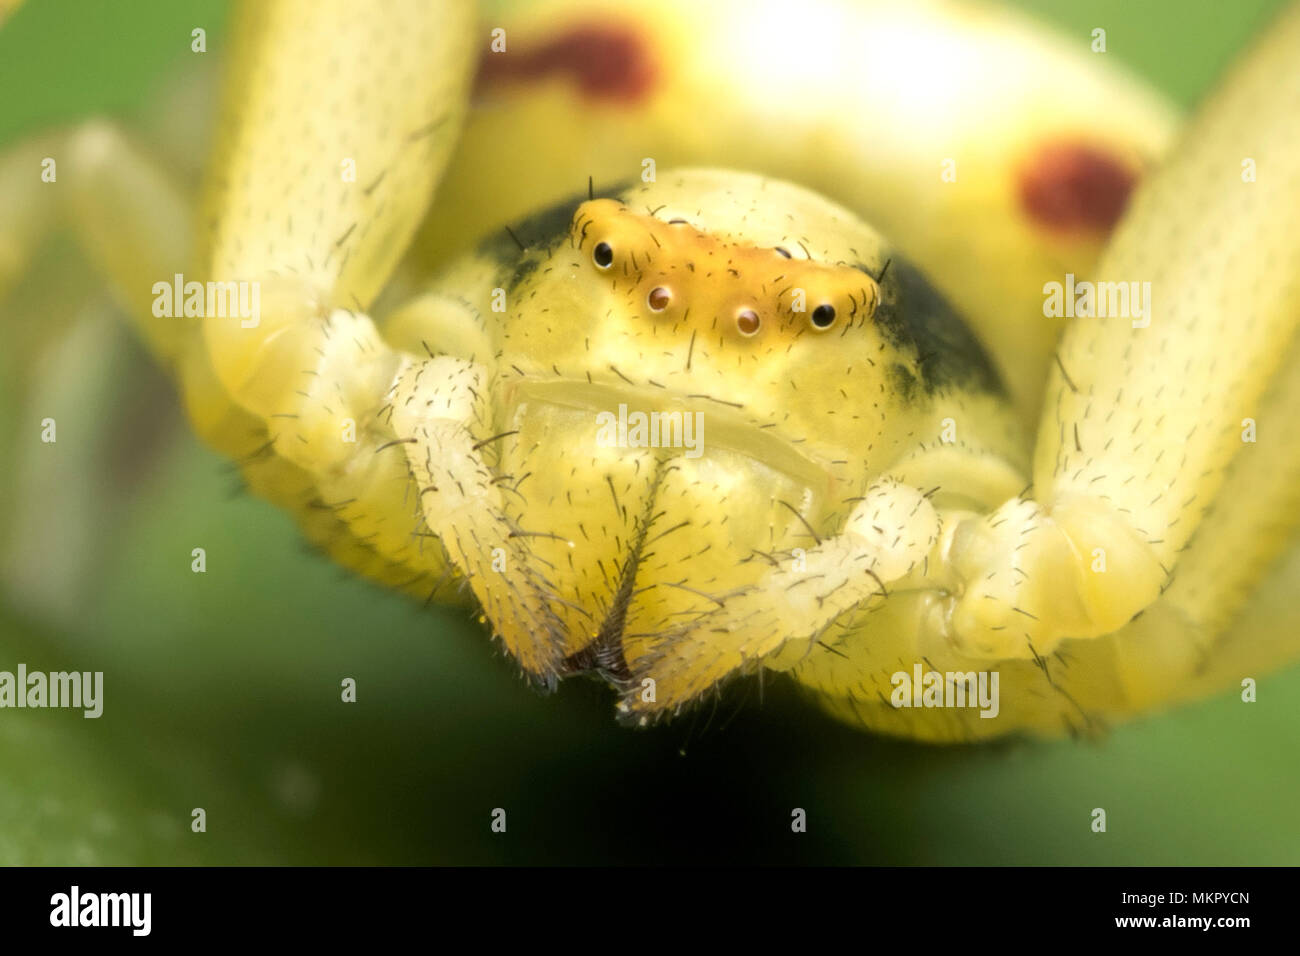 Nahaufnahme des Gesichts einer Krabbe Spinne (Misumena vatia) Tipperary, Irland Stockfoto